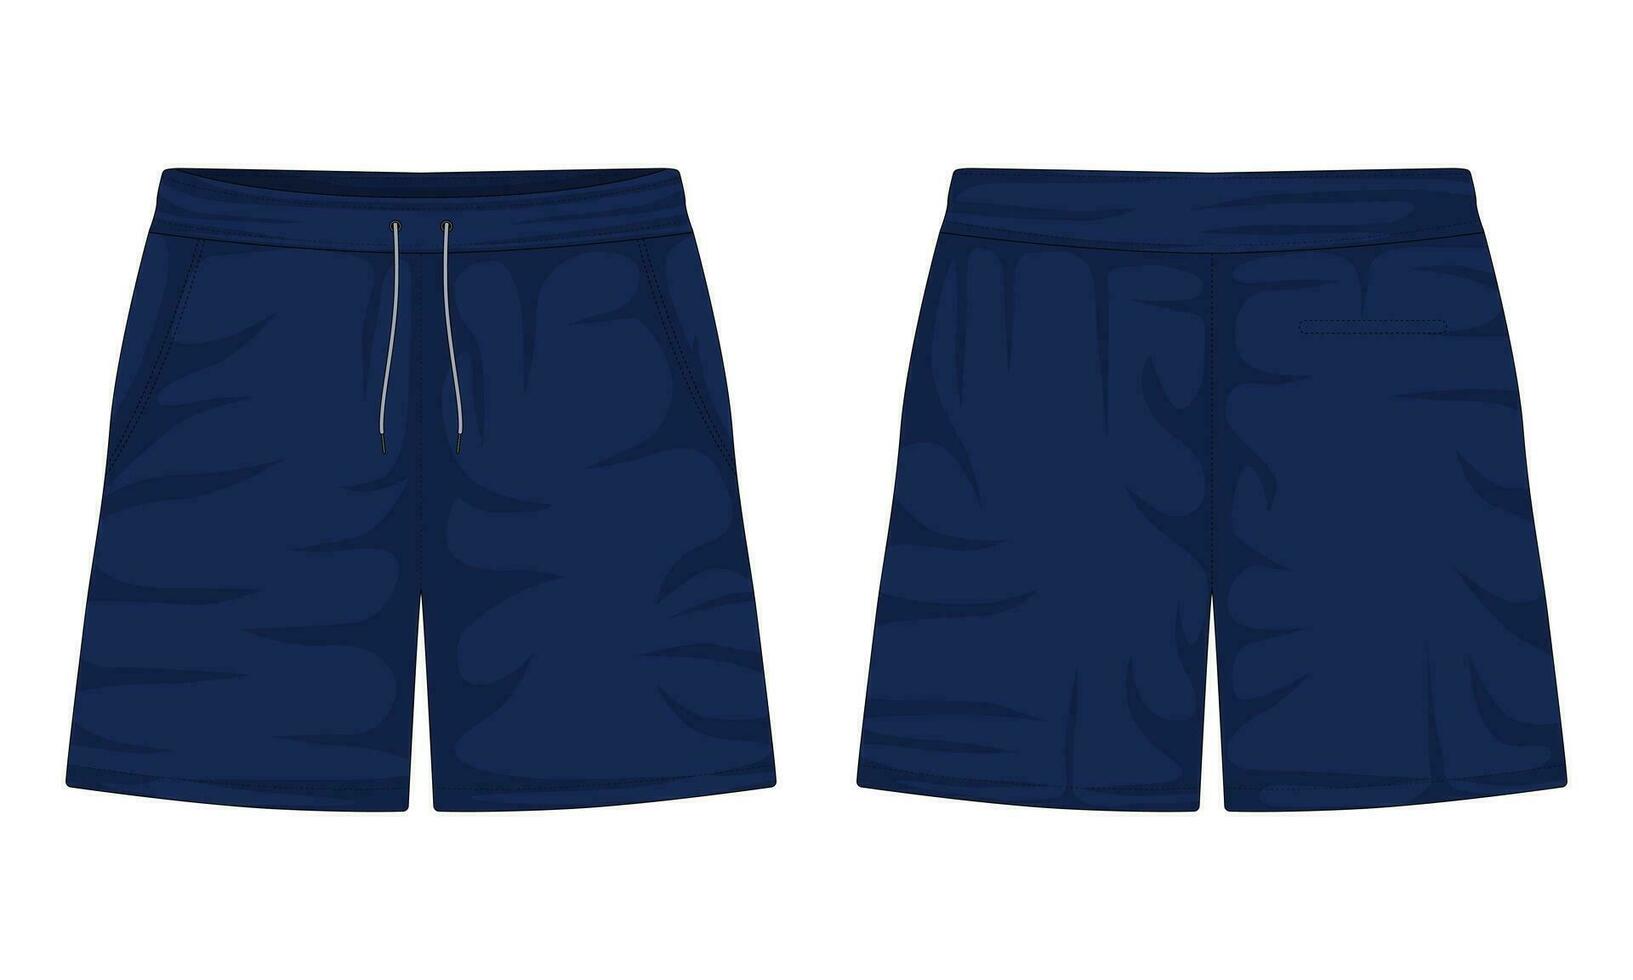 pantalones deportivos frente y espalda vista. Deportes bermudas. Armada azul casual bermudas. vector ilustración